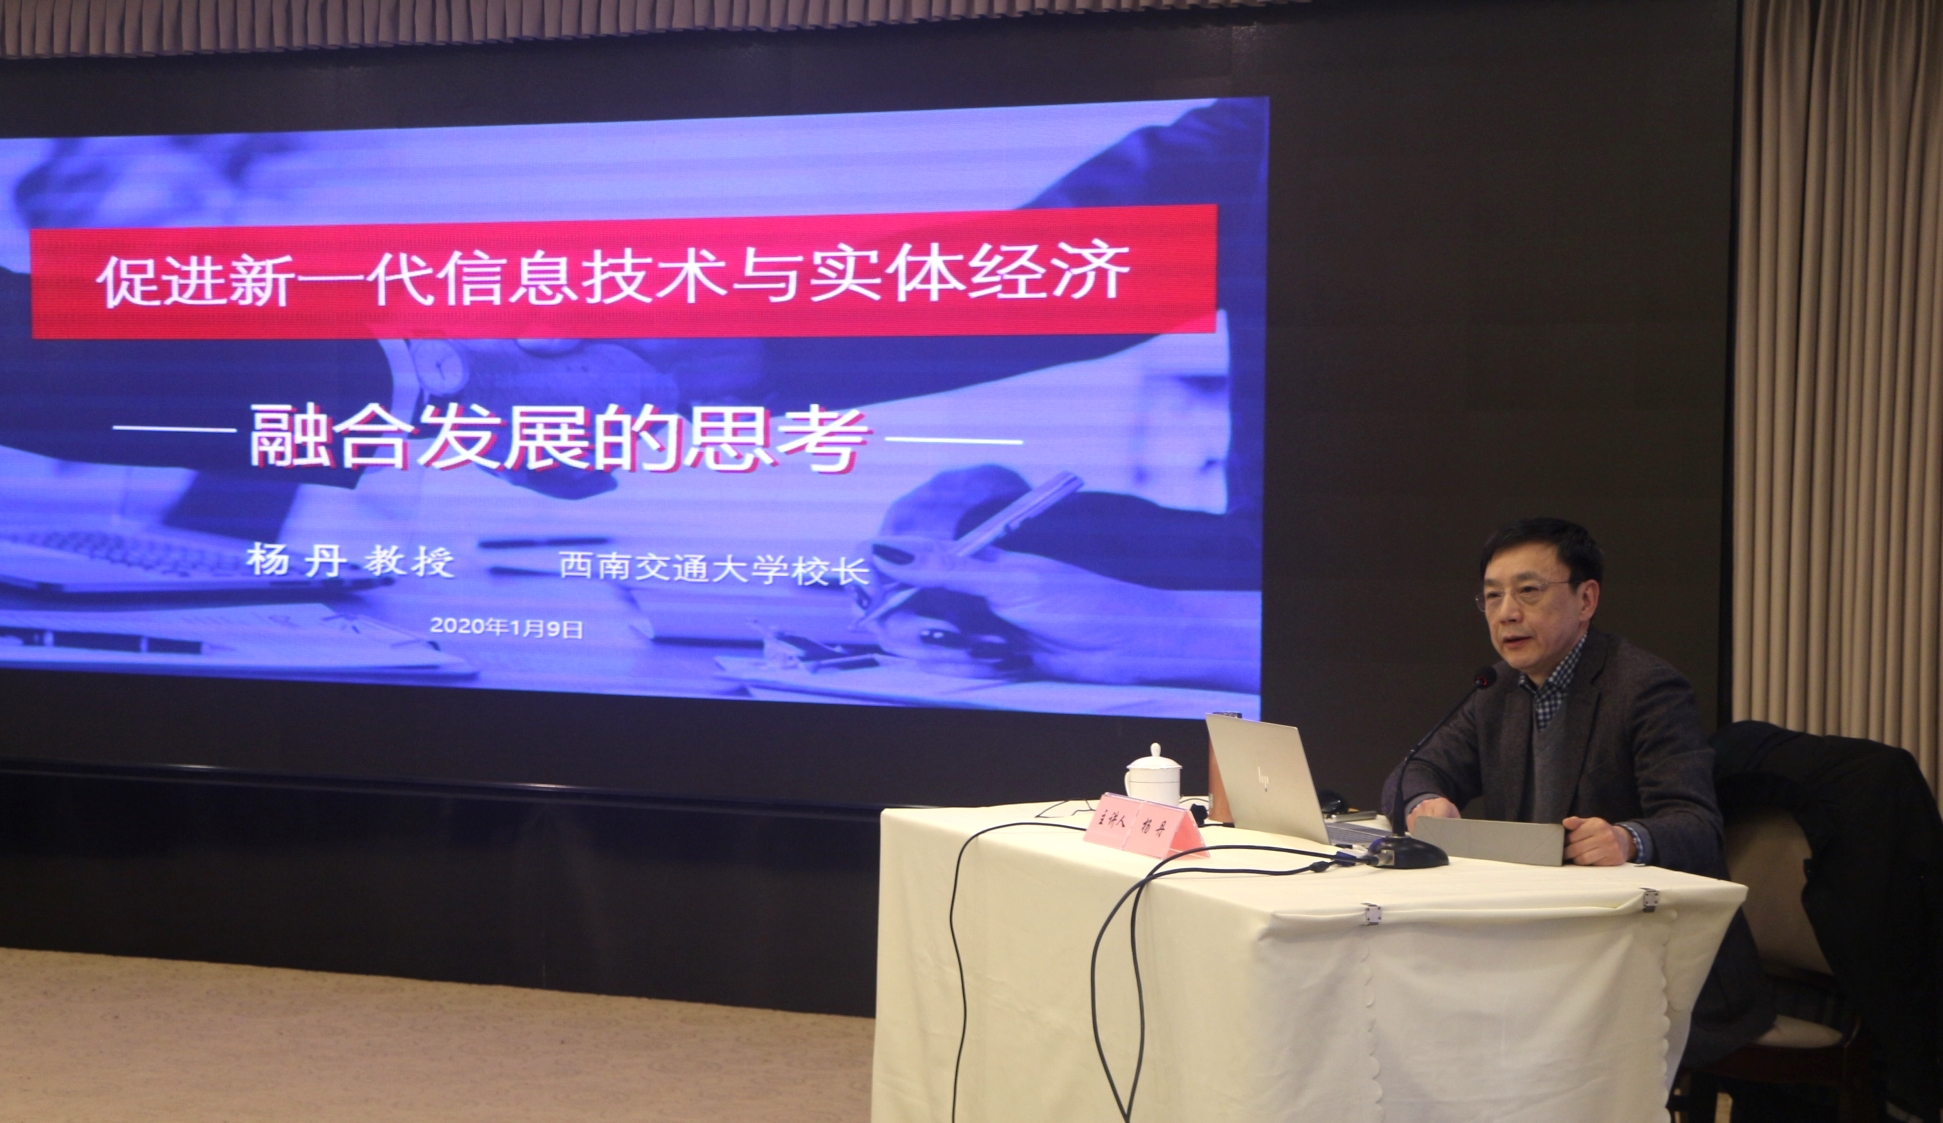 20200109杨丹在社省委第六期九三四川讲堂上作讲座.jpg